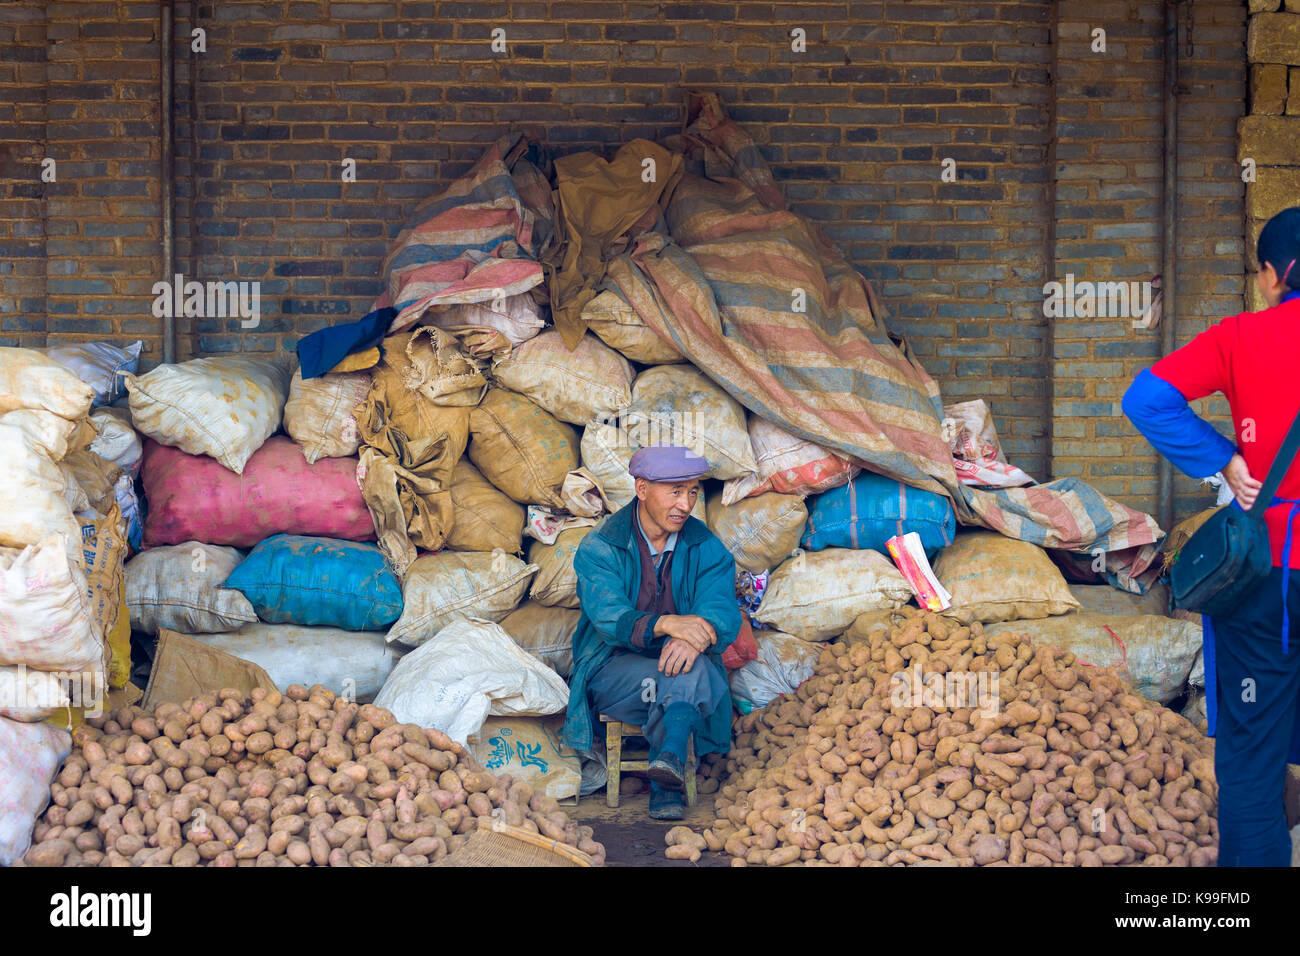 Lijiang, Cina - 30 Settembre 2007: patata cinese venditore la vendita di pile e sacchi di patate ad un mercato locale in Lijiang, Yunnan, Cina Foto Stock